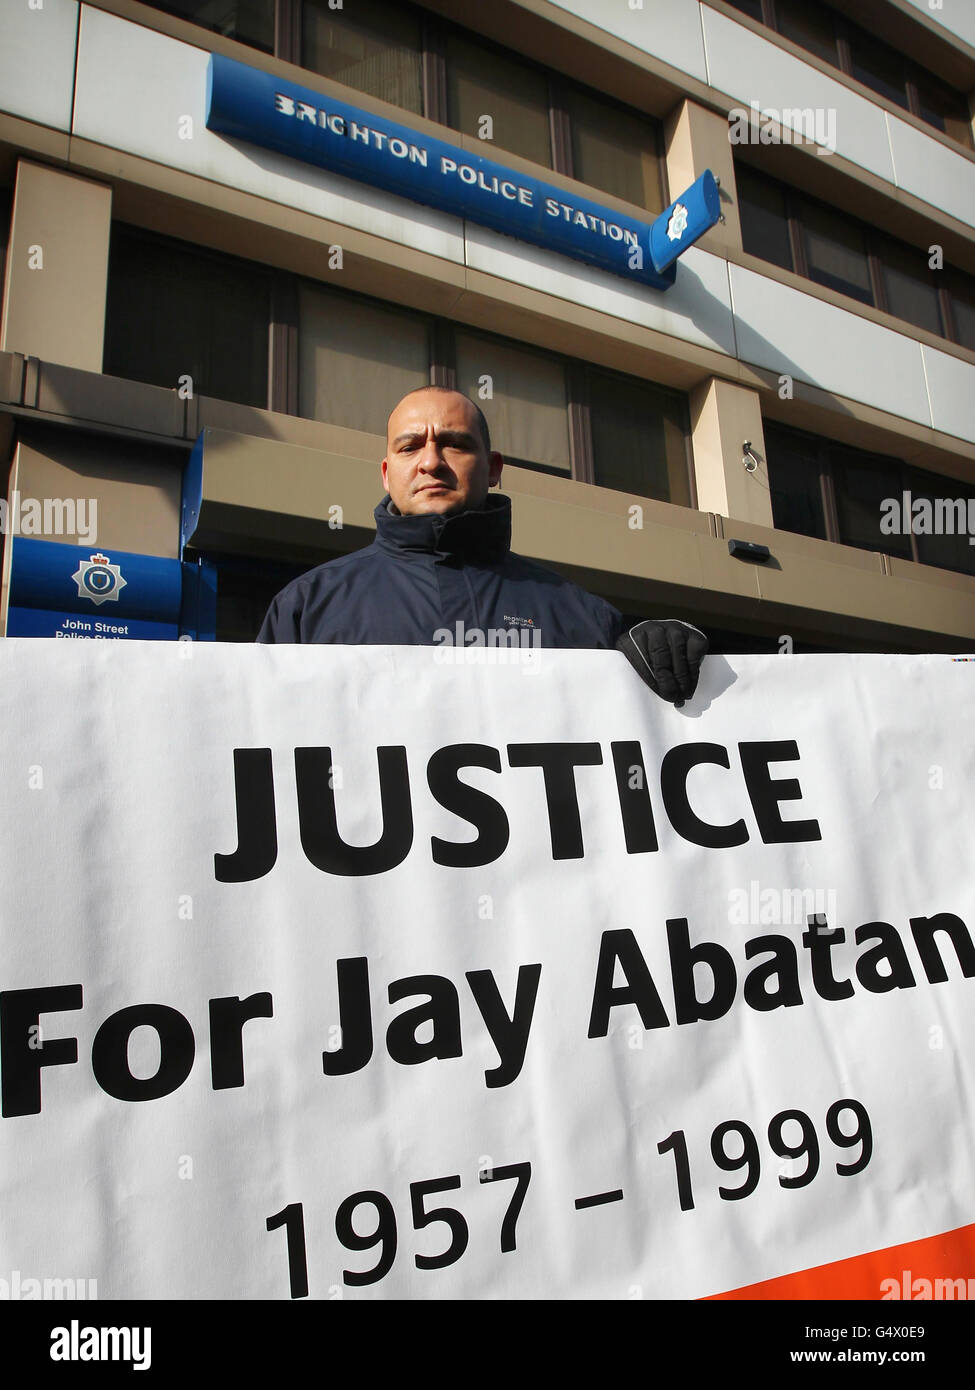 Michael Abatan, hermano de Jay Abatan que murió después de un ataque no provocado, lleva a cabo una vigilia por la justicia 13 años después de su muerte en las afueras de la Estación de Policía de Brighton en East Sussex. Foto de stock